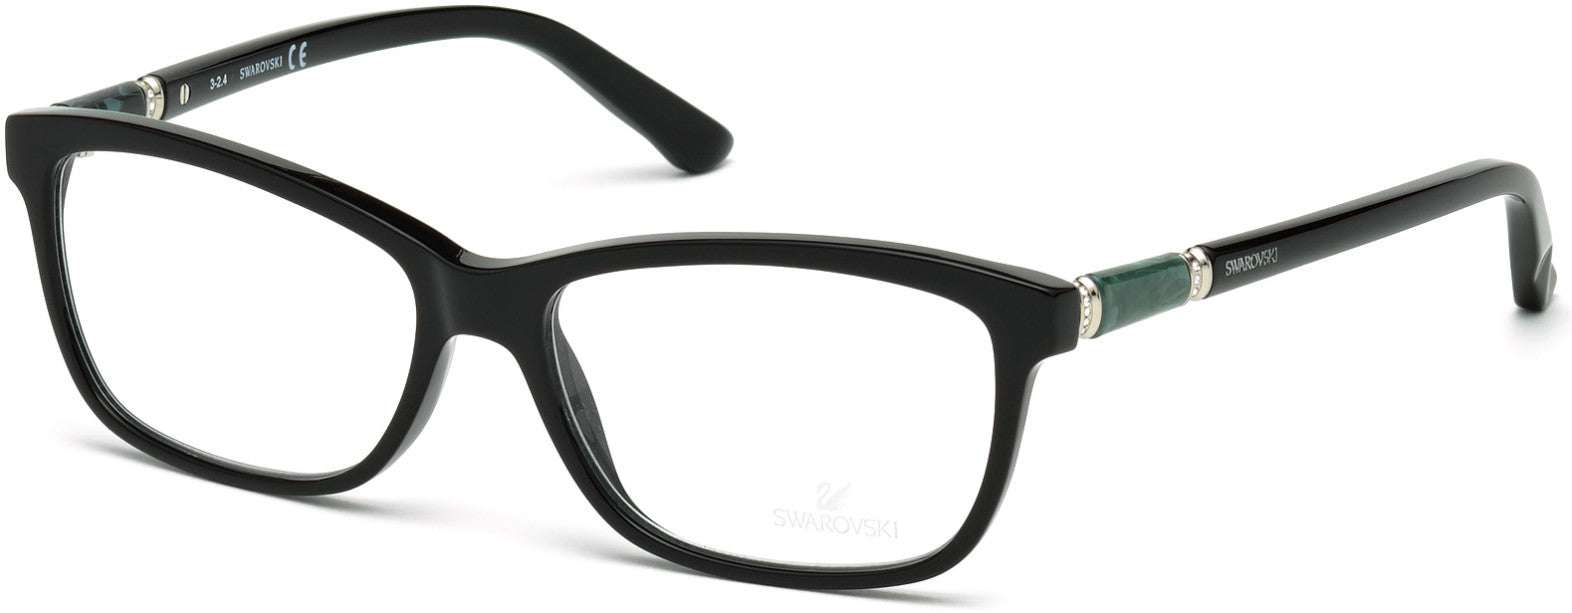 Swarovski SK5158 Flame Rectangular Eyeglasses 001-001 - Shiny Black